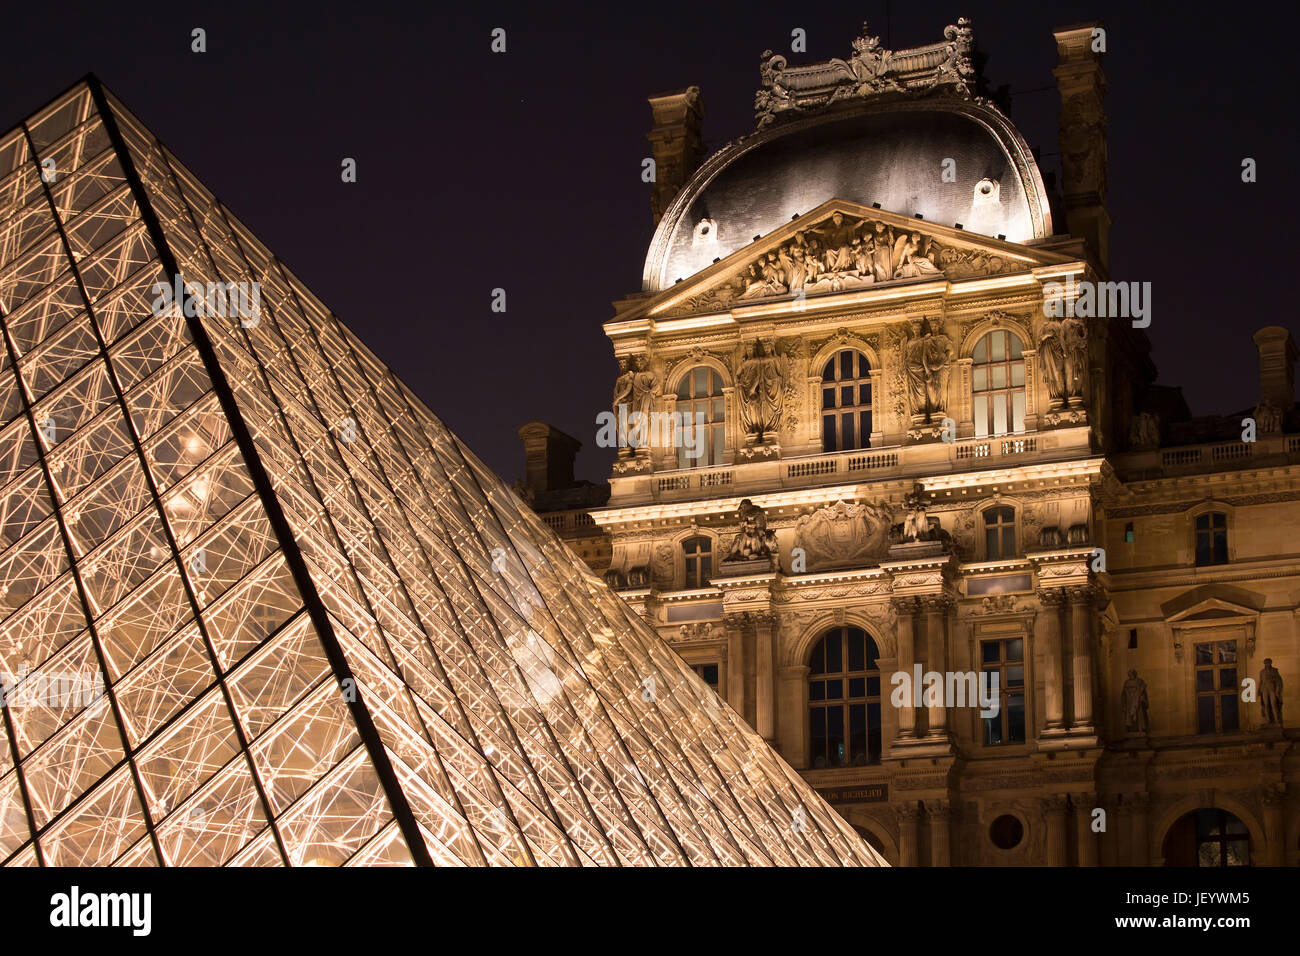 Vue de nuit sur la pyramide de verre au musée du Louvre (Musée du Louvre). Ancien palais historique énorme collection d'art de logement, à partir de sculptures romaines de da Vinci Banque D'Images